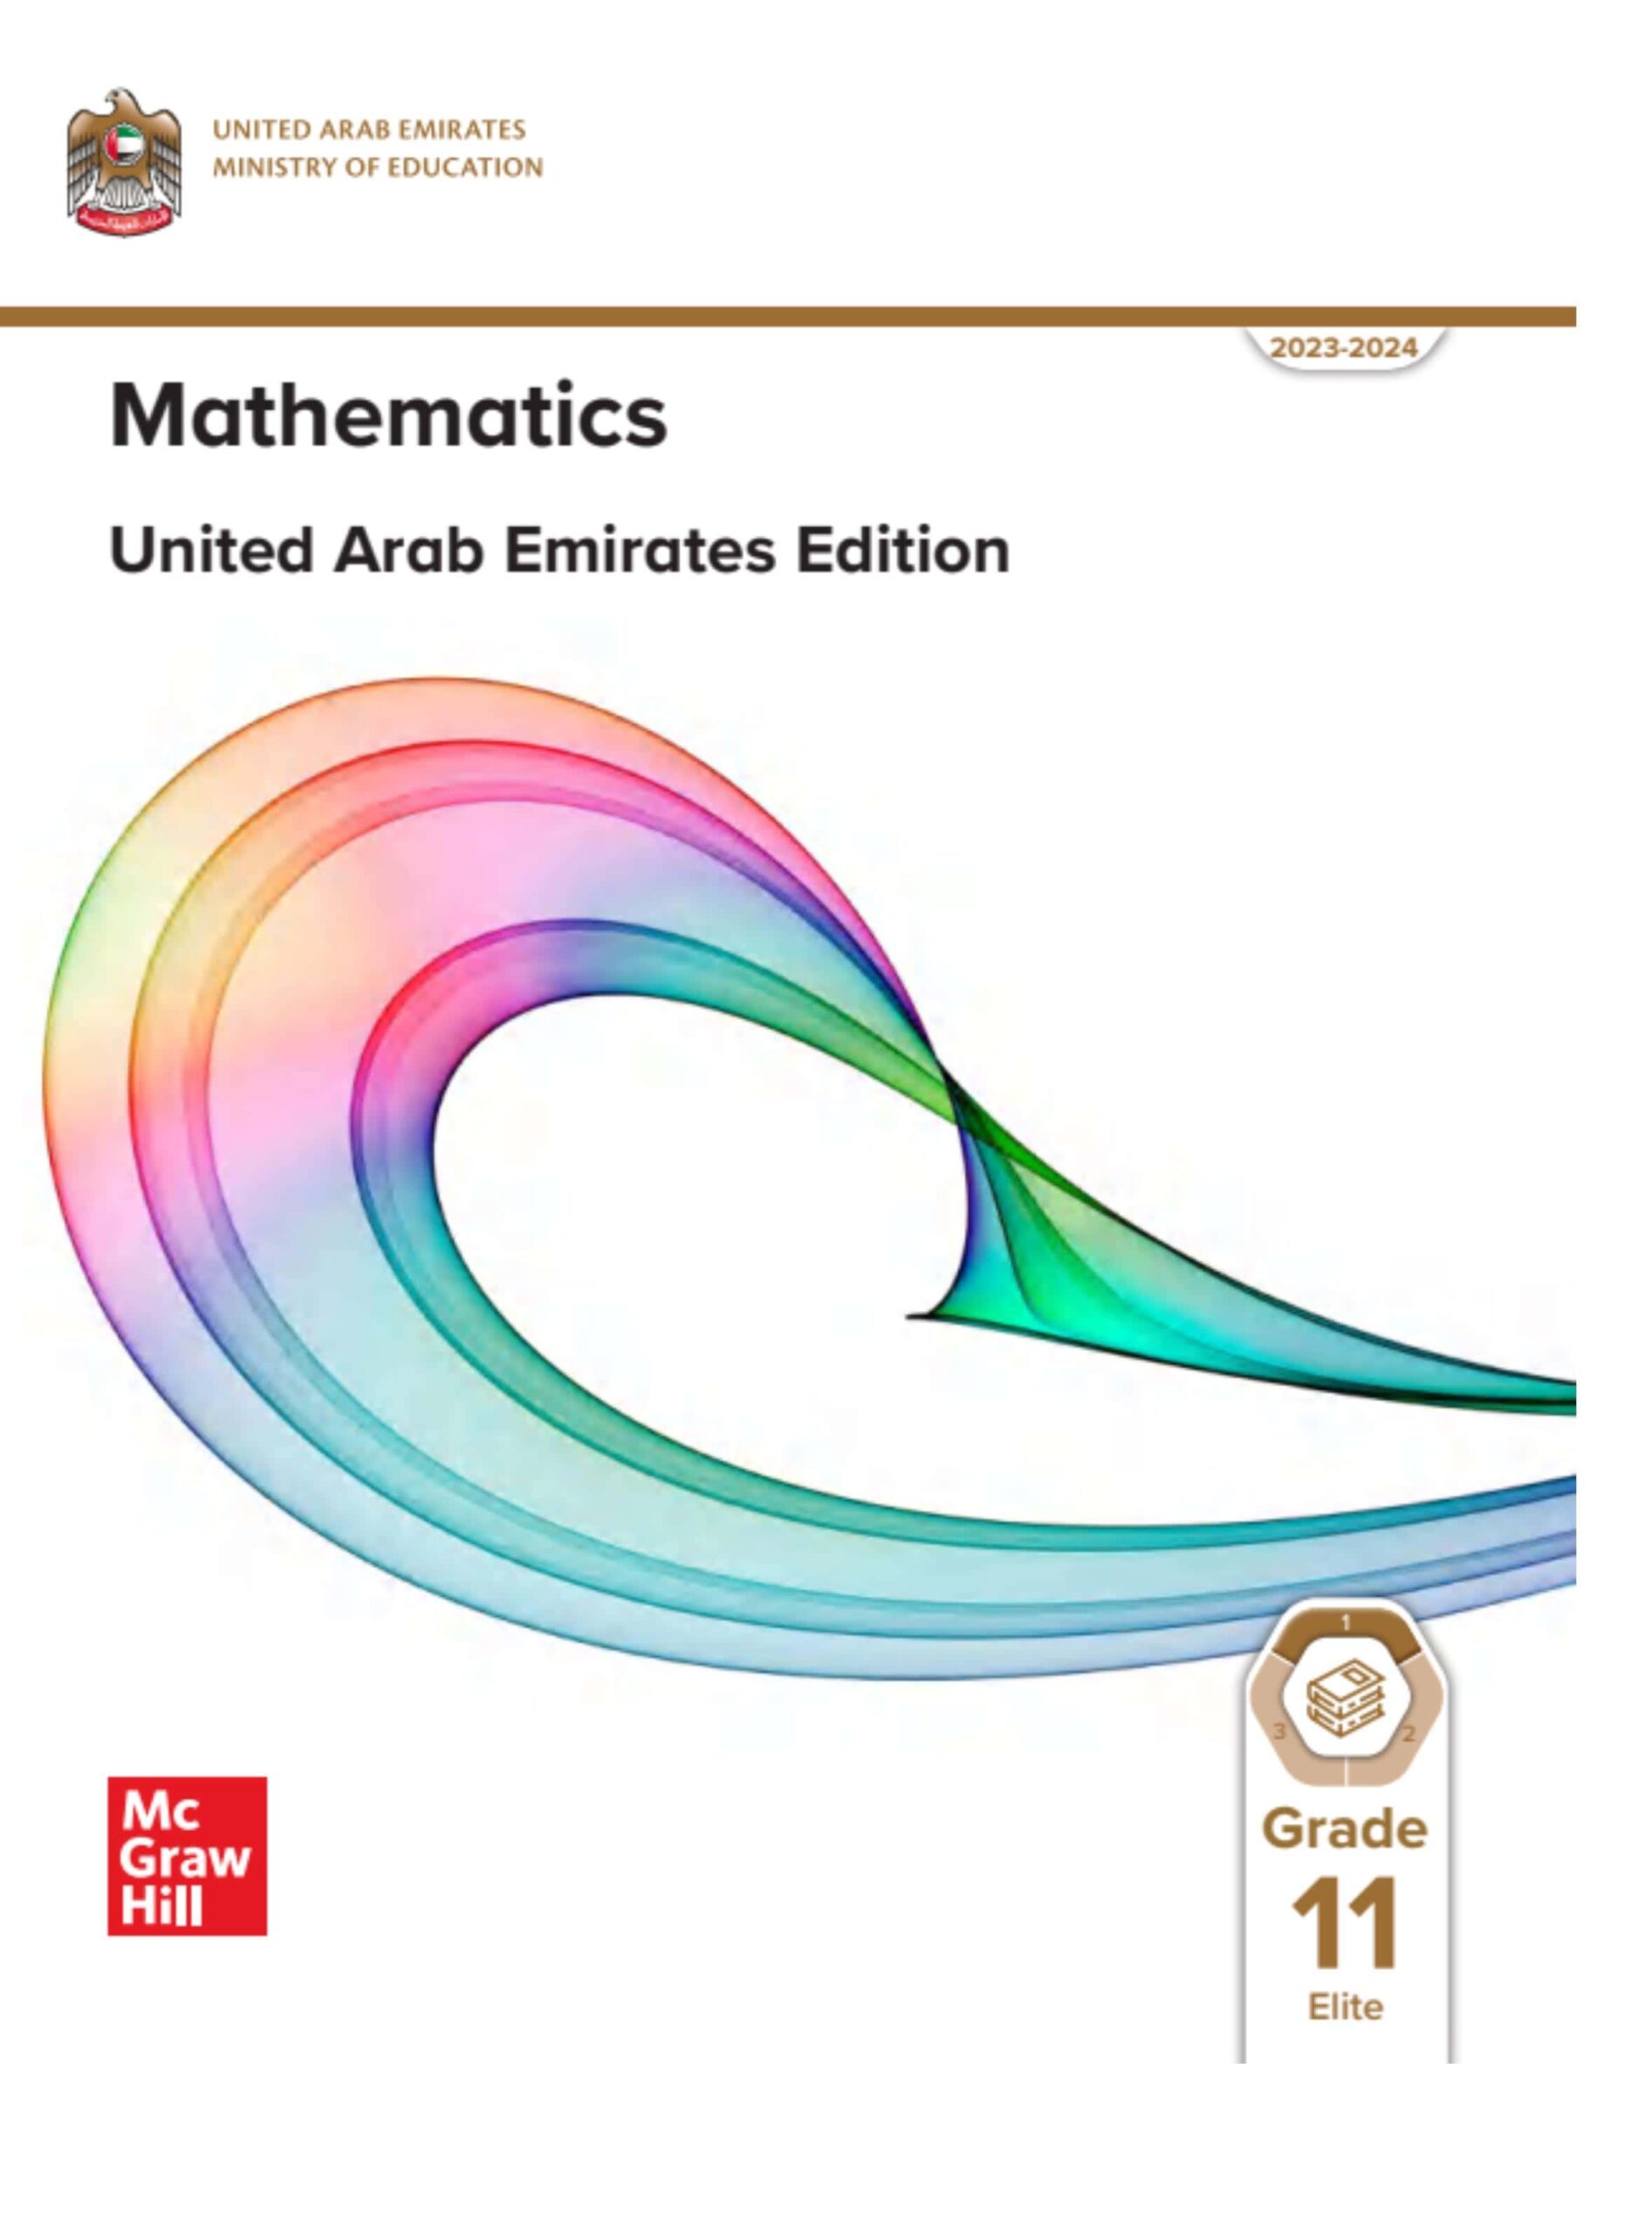 كتاب الطالب Volume 1 الرياضيات المتكاملة الصف الحادي عشر نخبة Reveal الفصل الدراسي الأول 2023-2024 نسخة مصورة